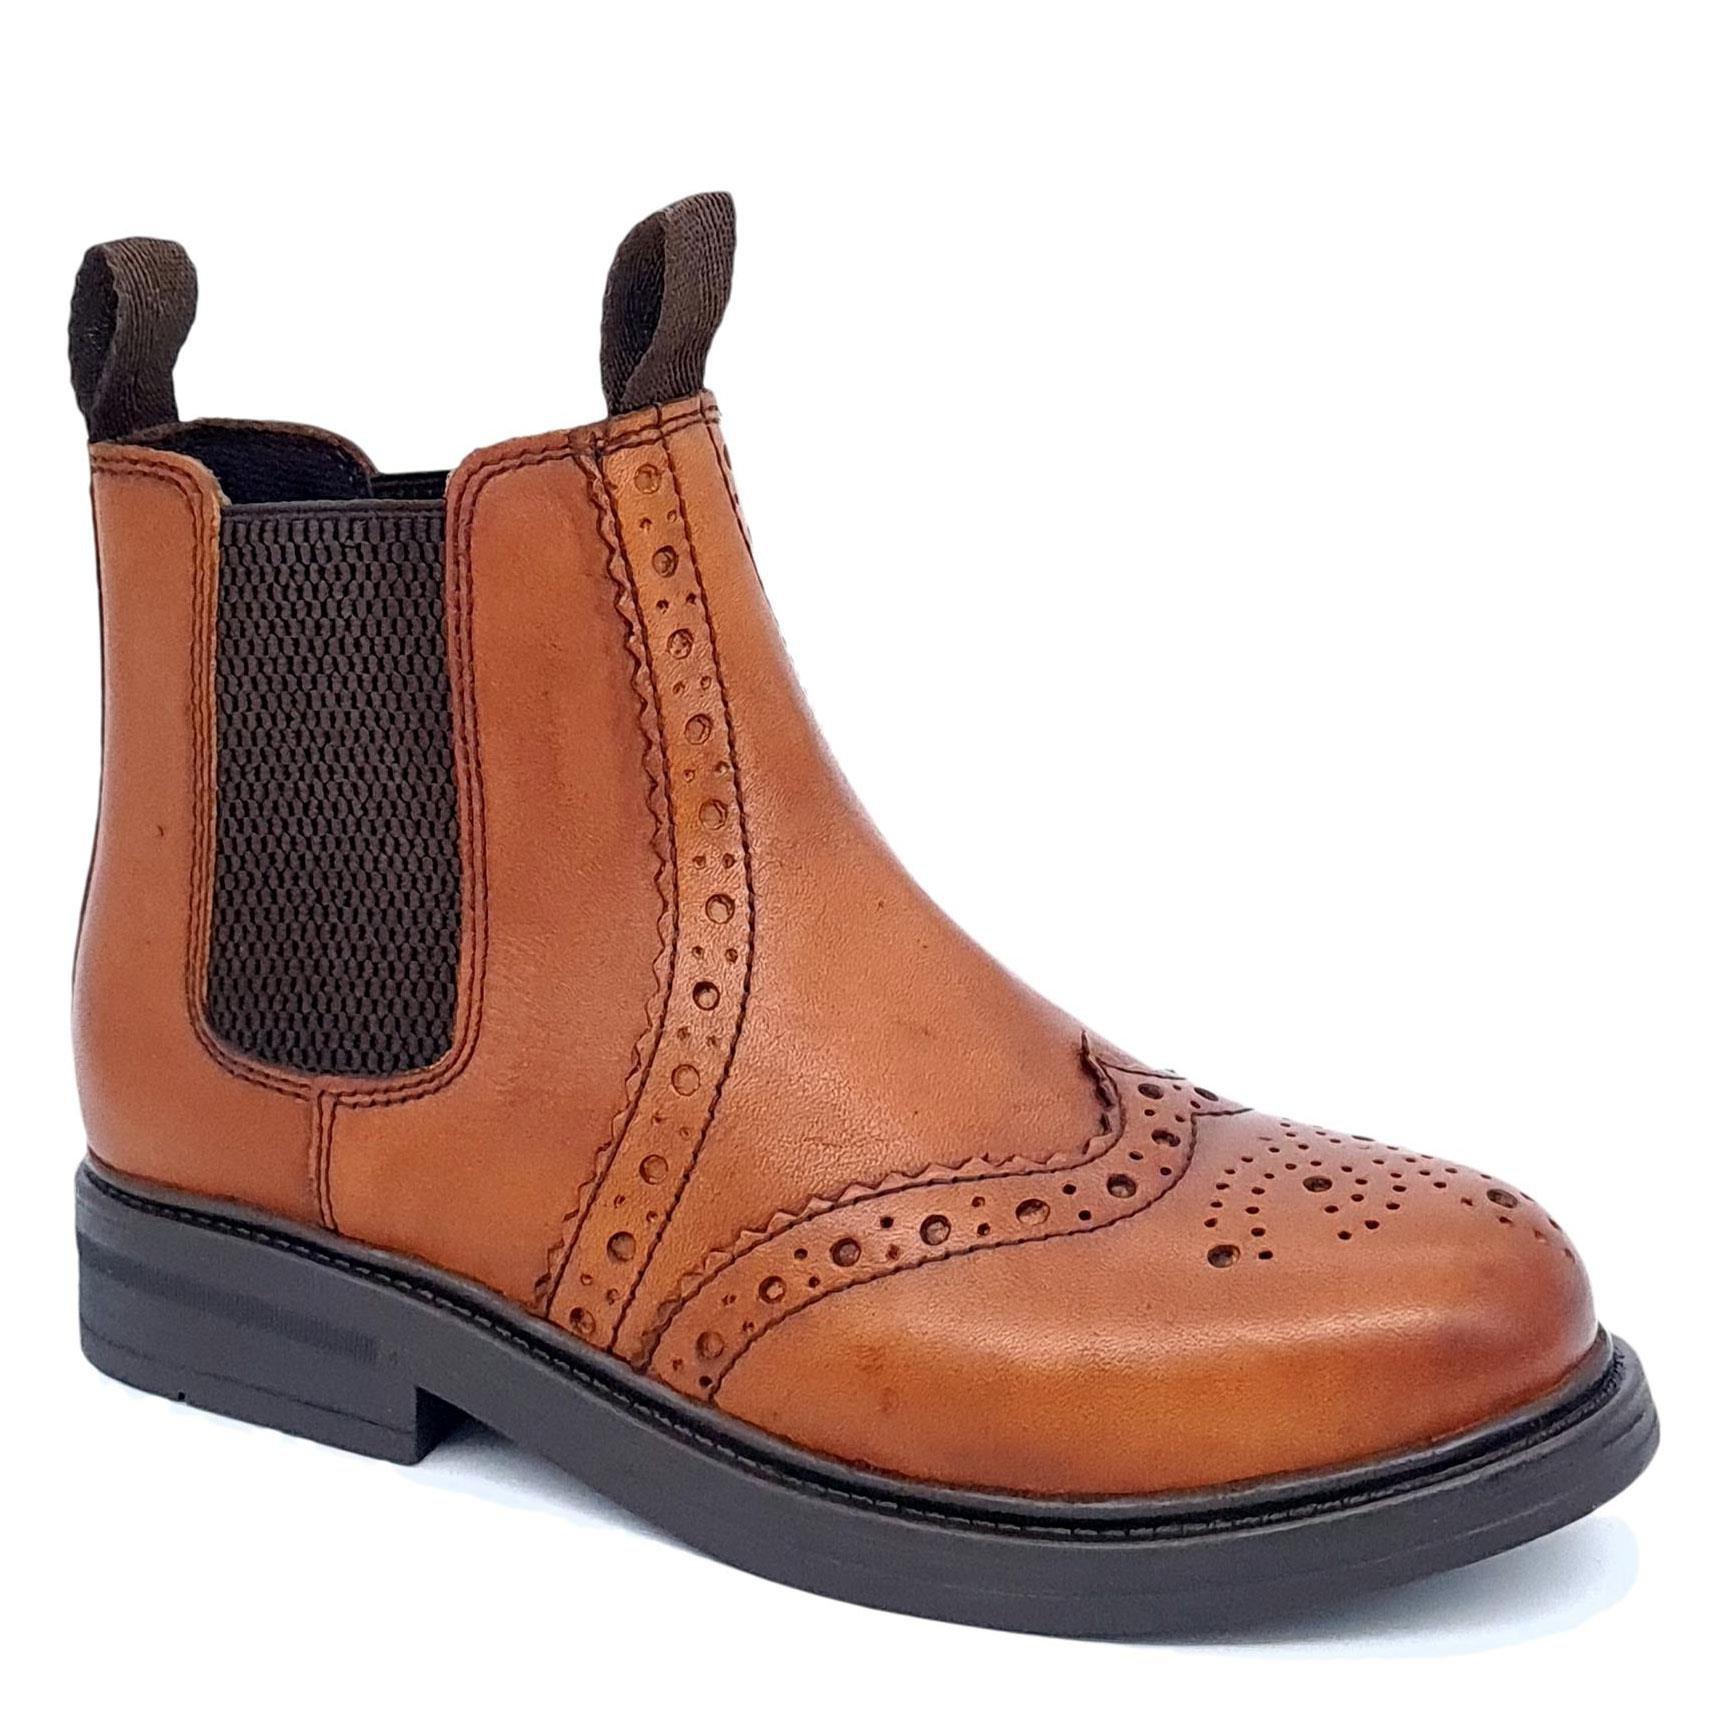 Кожаные ботинки челси с акцентом на броги Wrexham Frank James, коричневый цена и фото